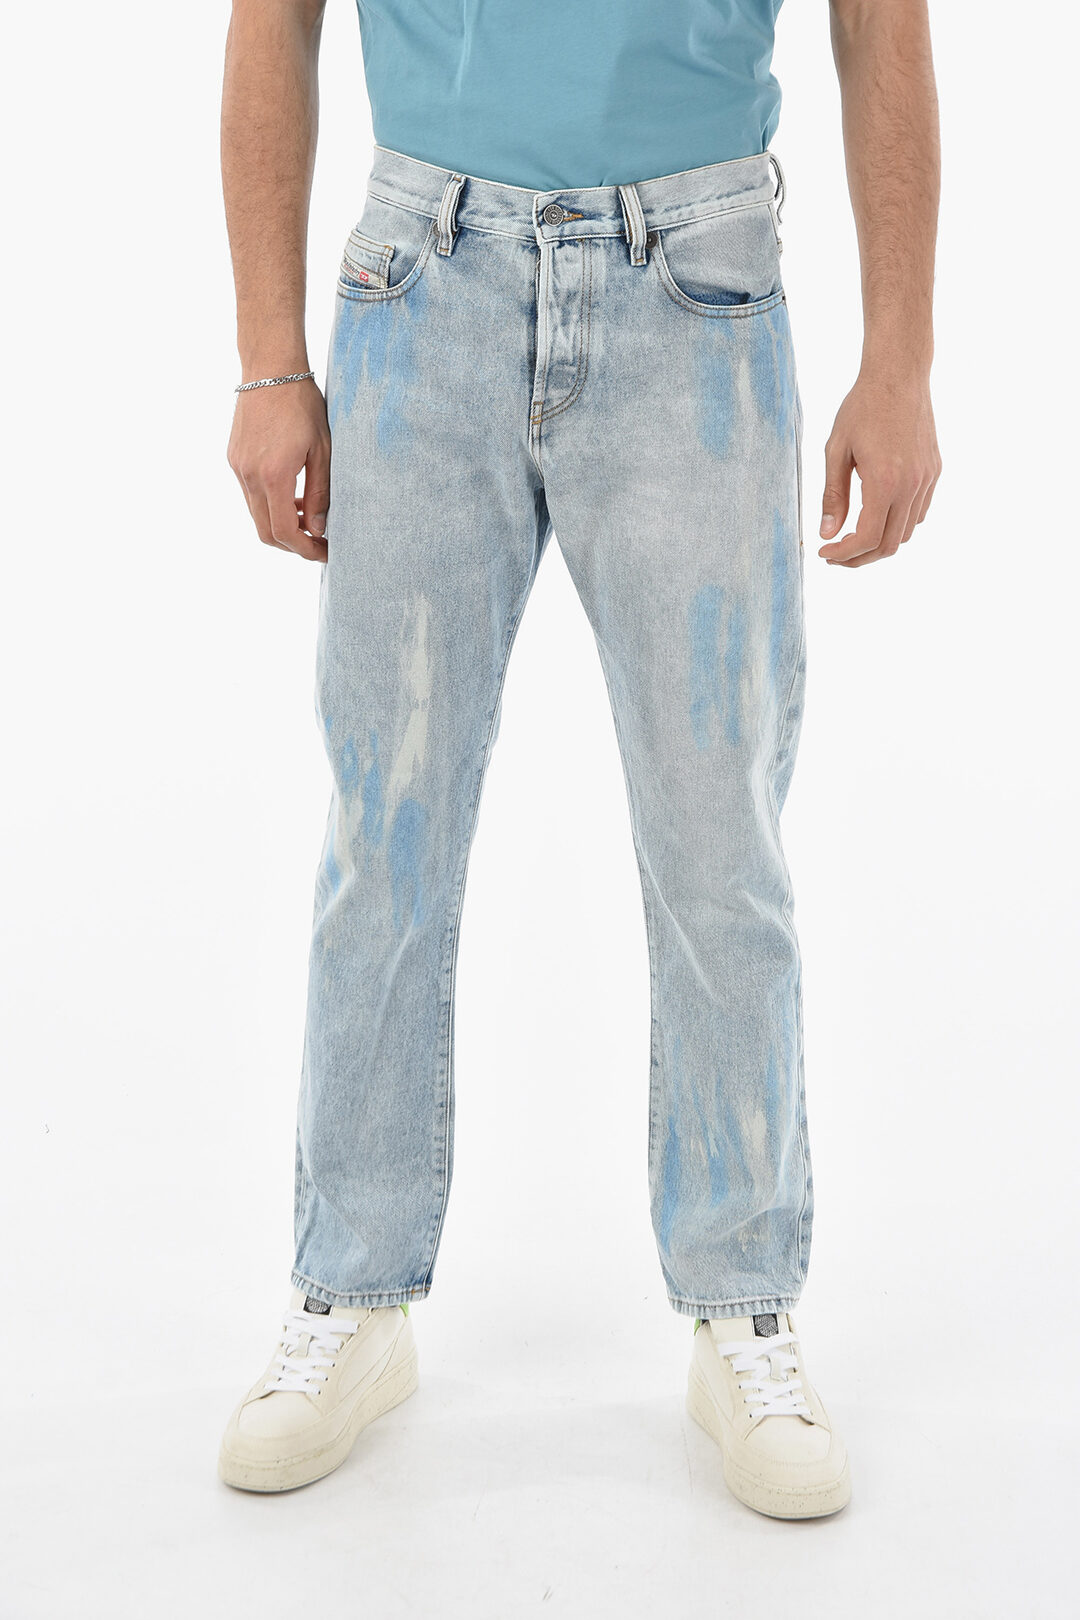 Matig vlotter Met name Diesel Vintage Effect 5 Pockets D-VIKER Jeans 18cm L32 men - Glamood Outlet